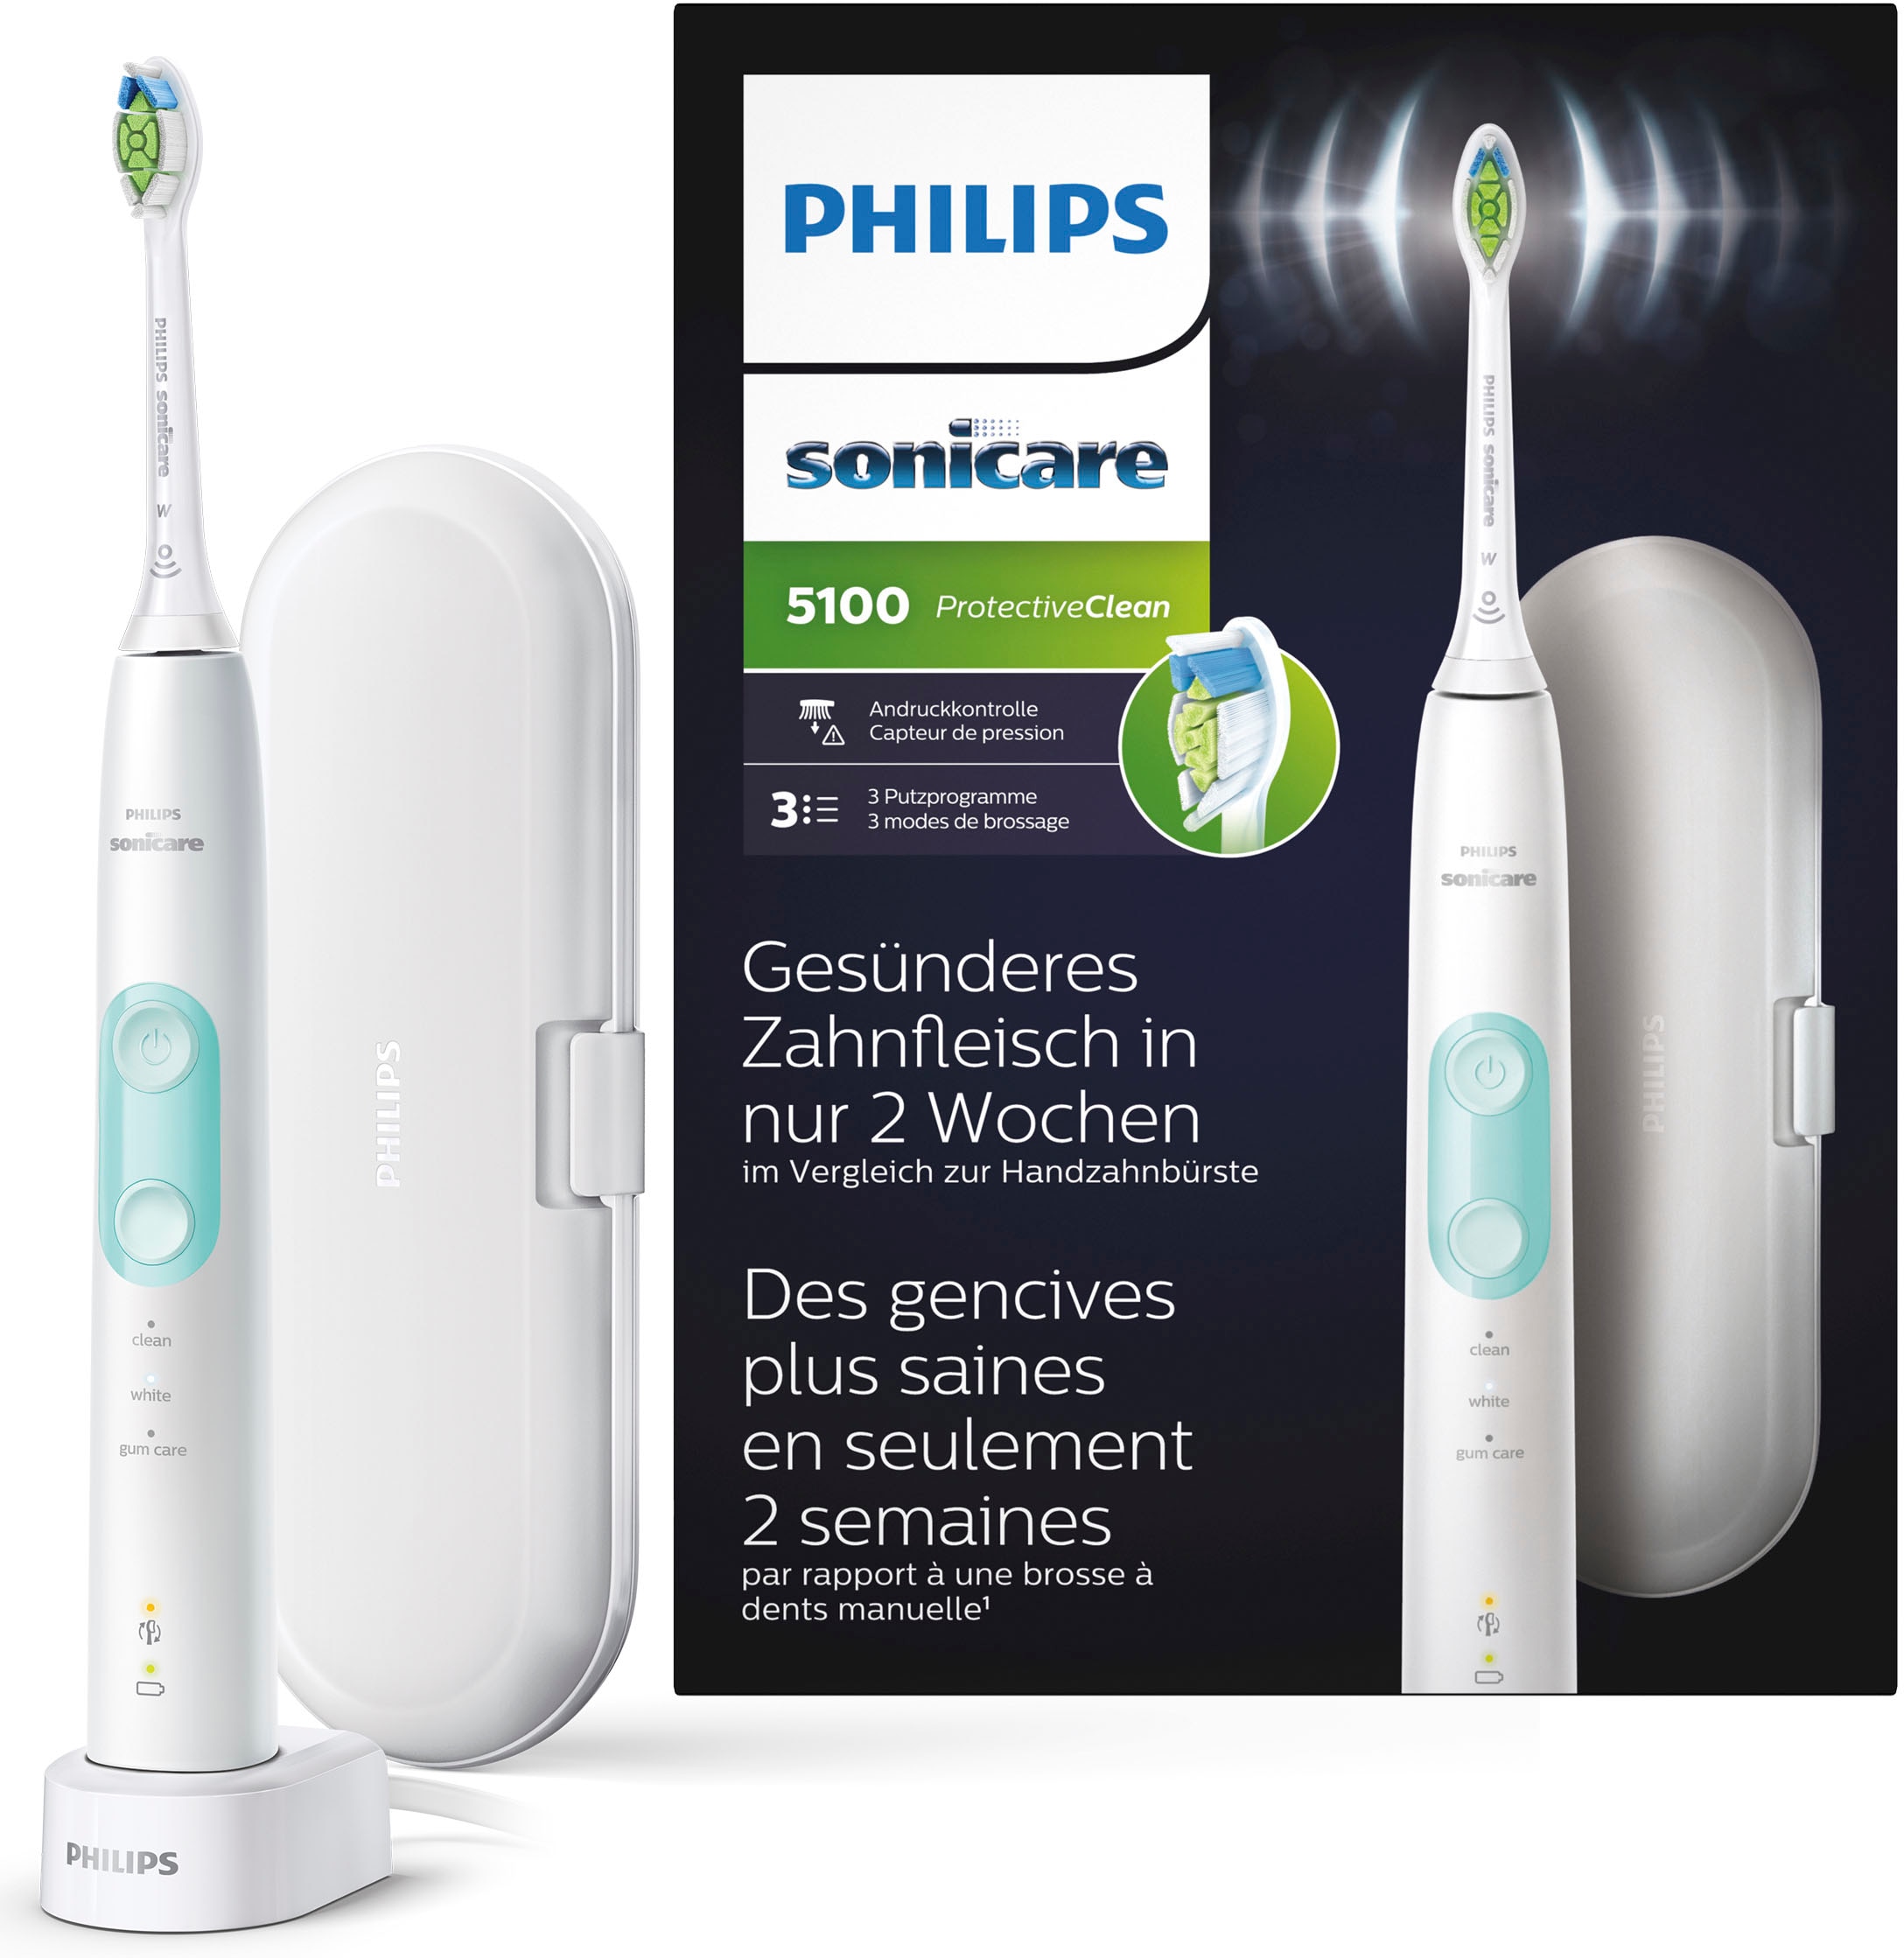 Philips Sonicare Elektrische Zahnbürste »ProtectiveClean 5100 HX6857/28«, 1 St. Aufsteckbürsten, mit integriertem Drucksensor, 3 Putzprogramme, inkl. Reiseetui